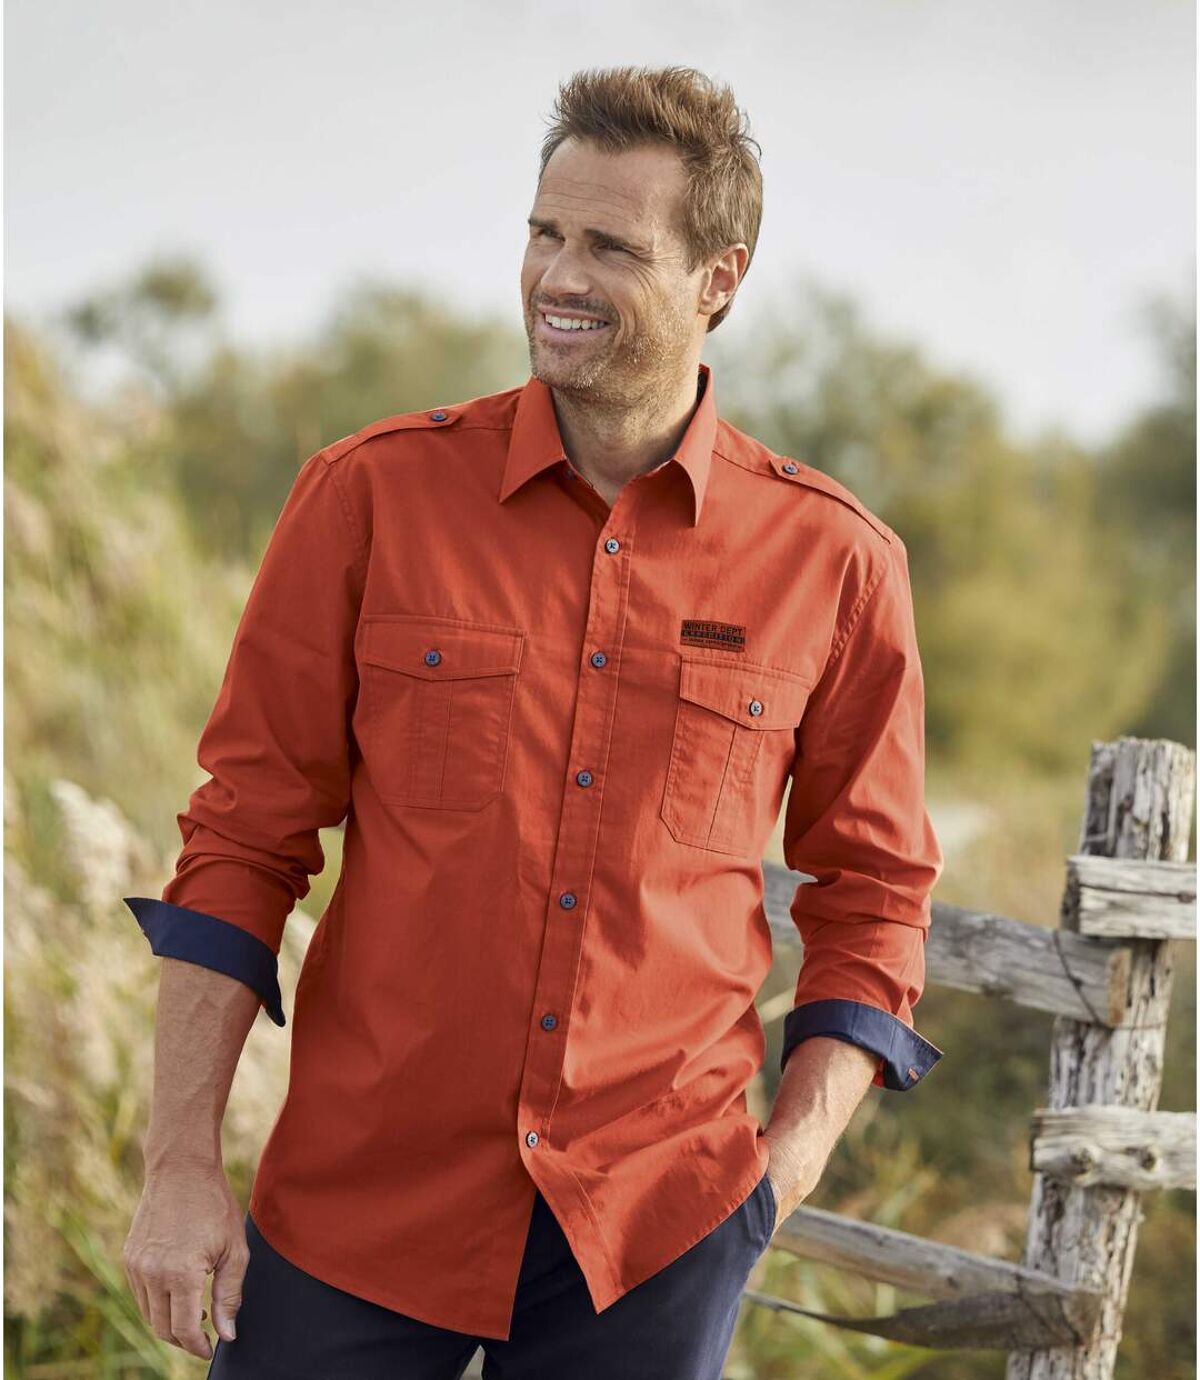 Men's Orange Aviator Shirt - Long Sleeves Atlas For Men